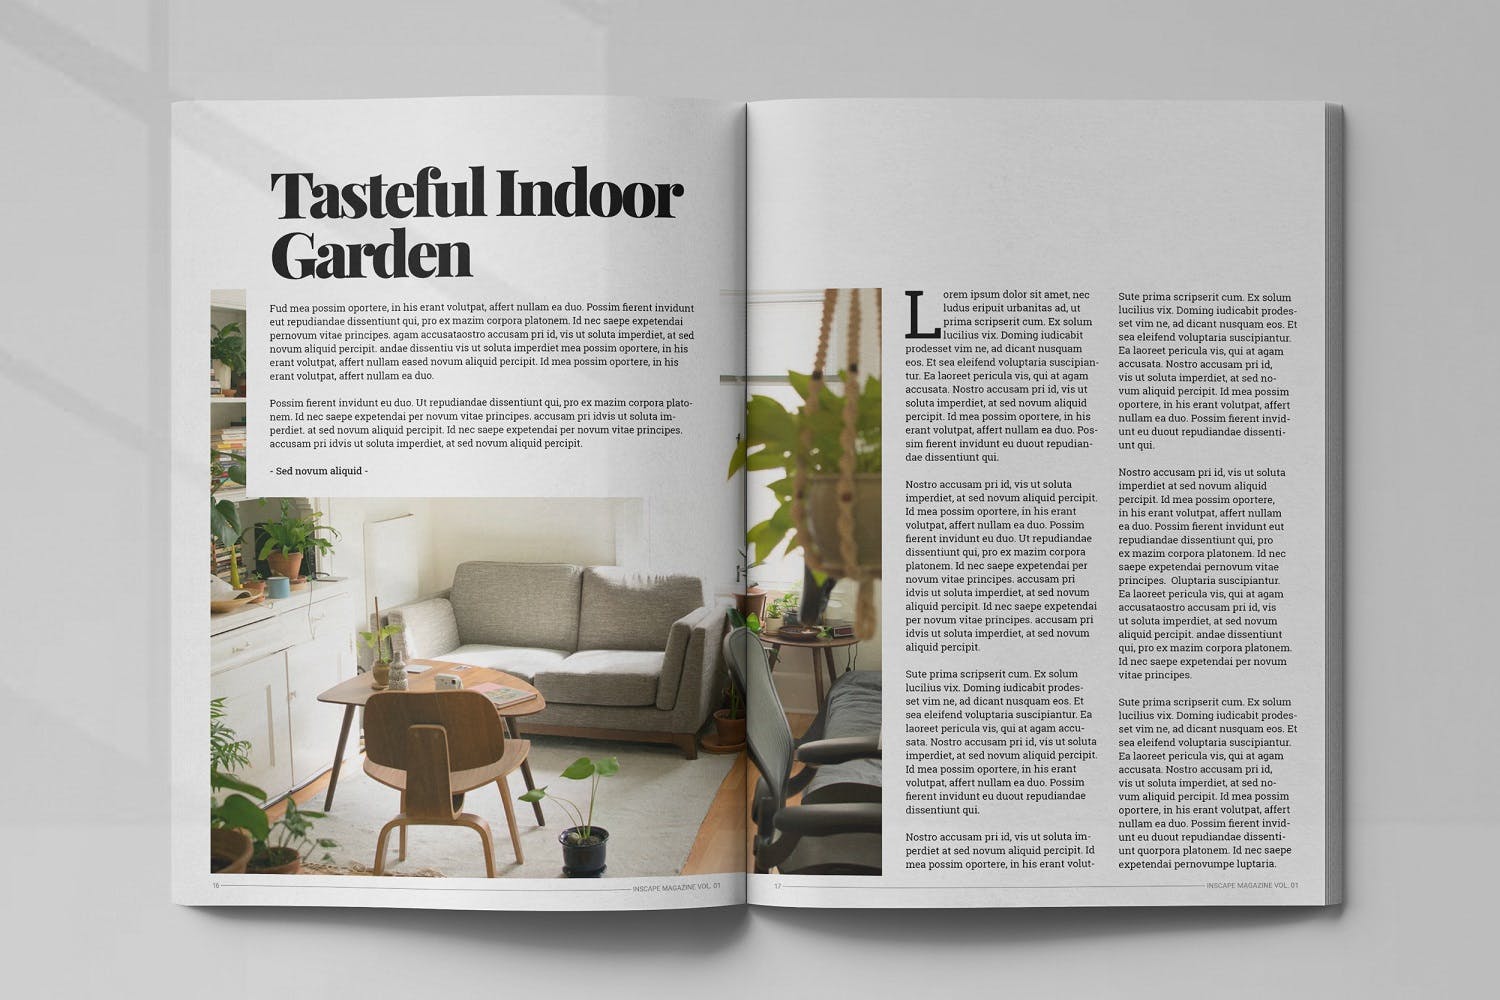 室内设计主题蚂蚁素材精选杂志排版设计模板 Inscape Interior Magazine插图(8)